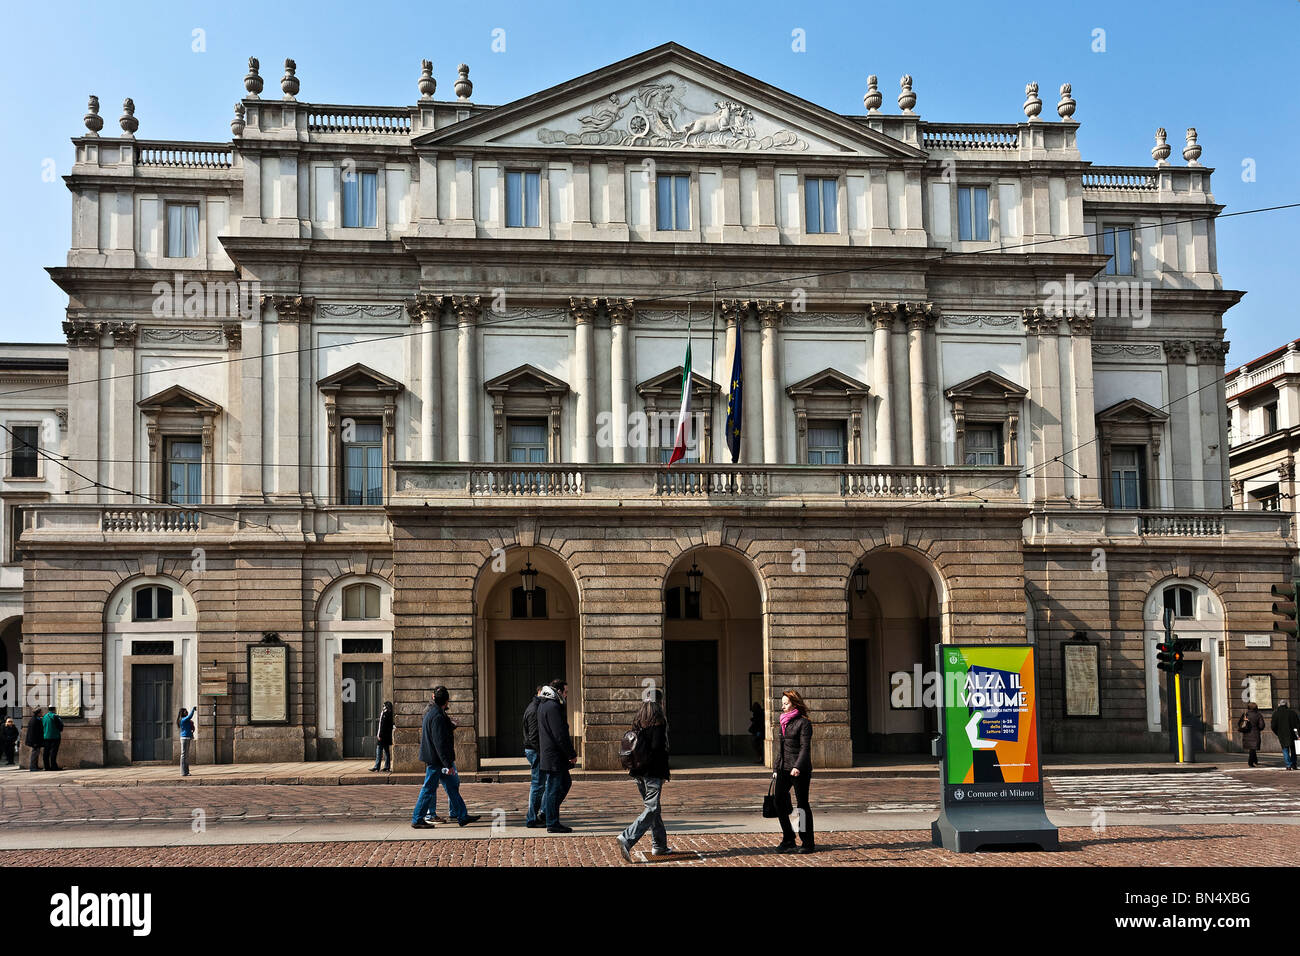 La scala theather, Giuseppe Piermarini architect, 1776, Milan, Italy Stock Photo